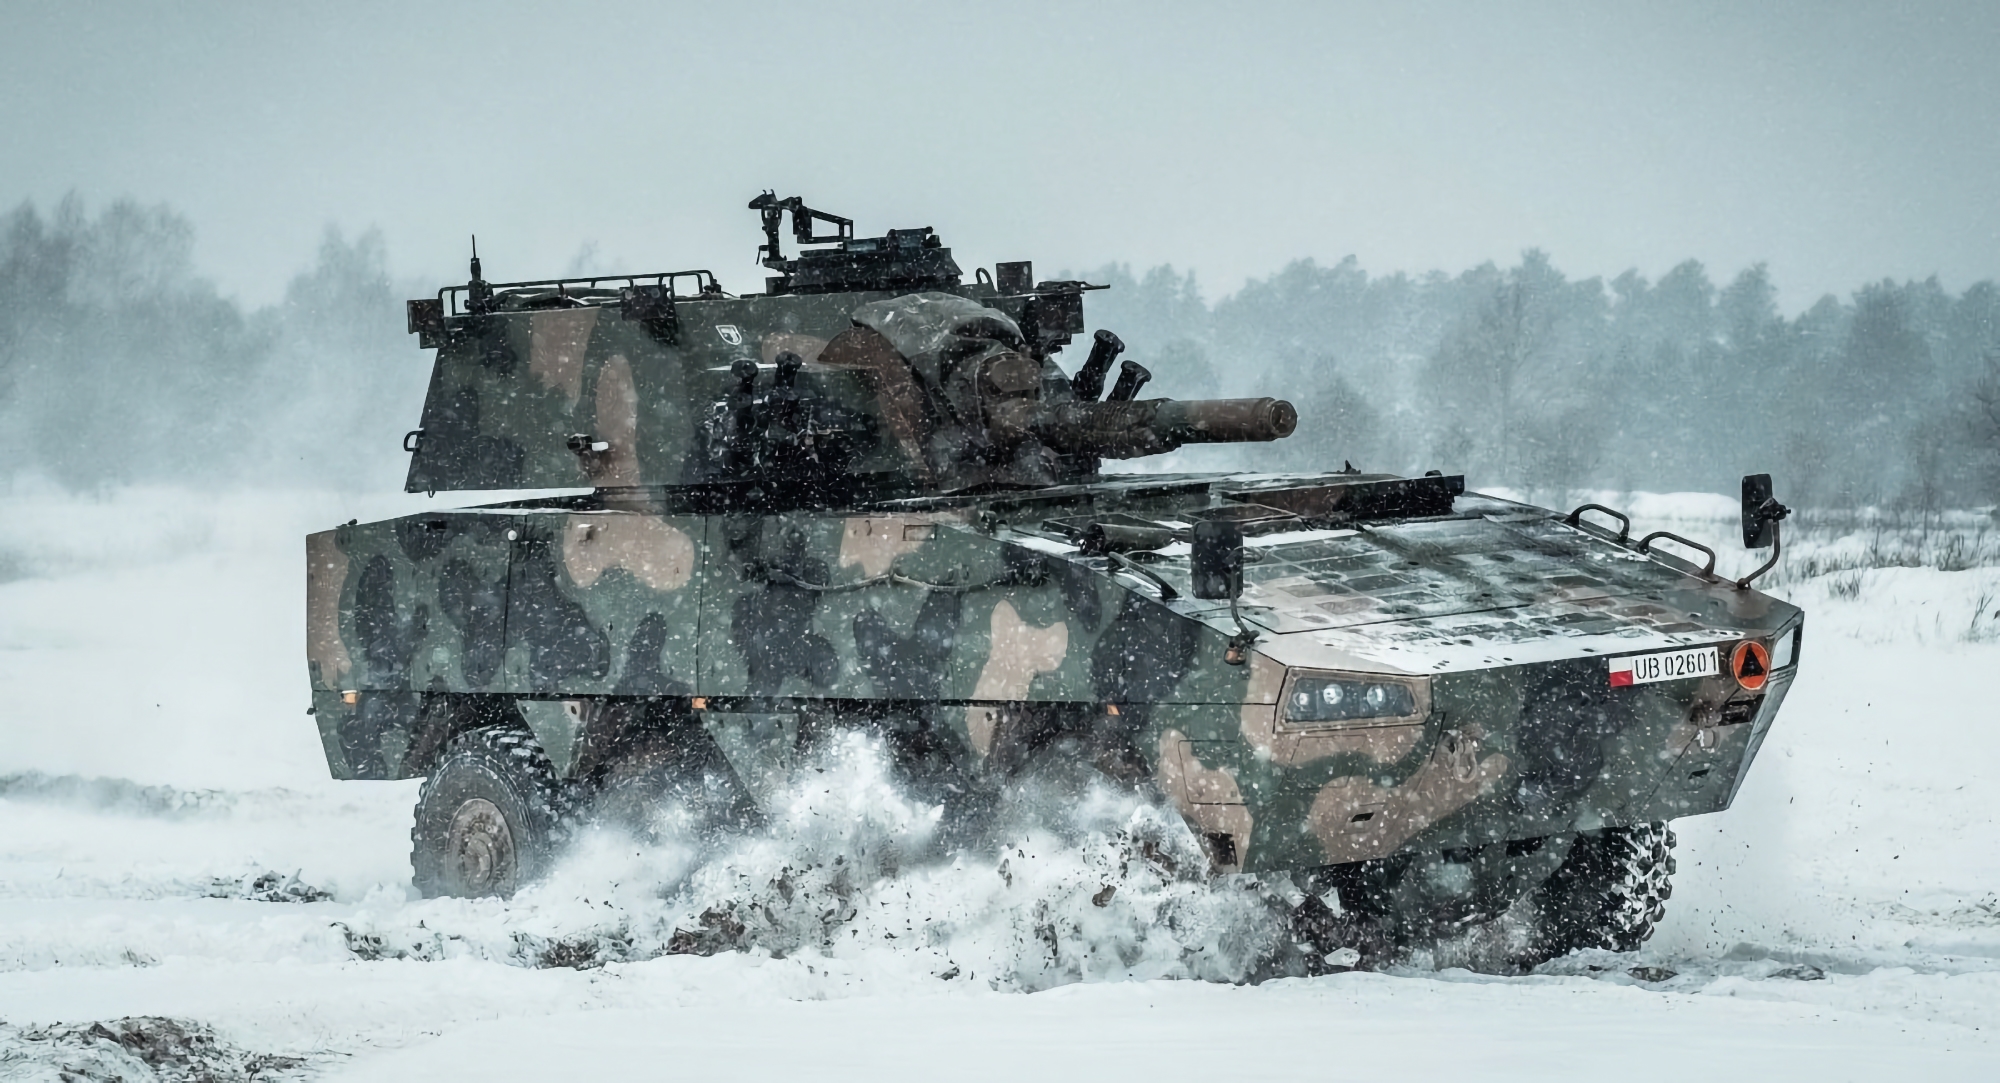 Polska armia otrzymuje nową partię samobieżnych moździerzy Rak 120 mm